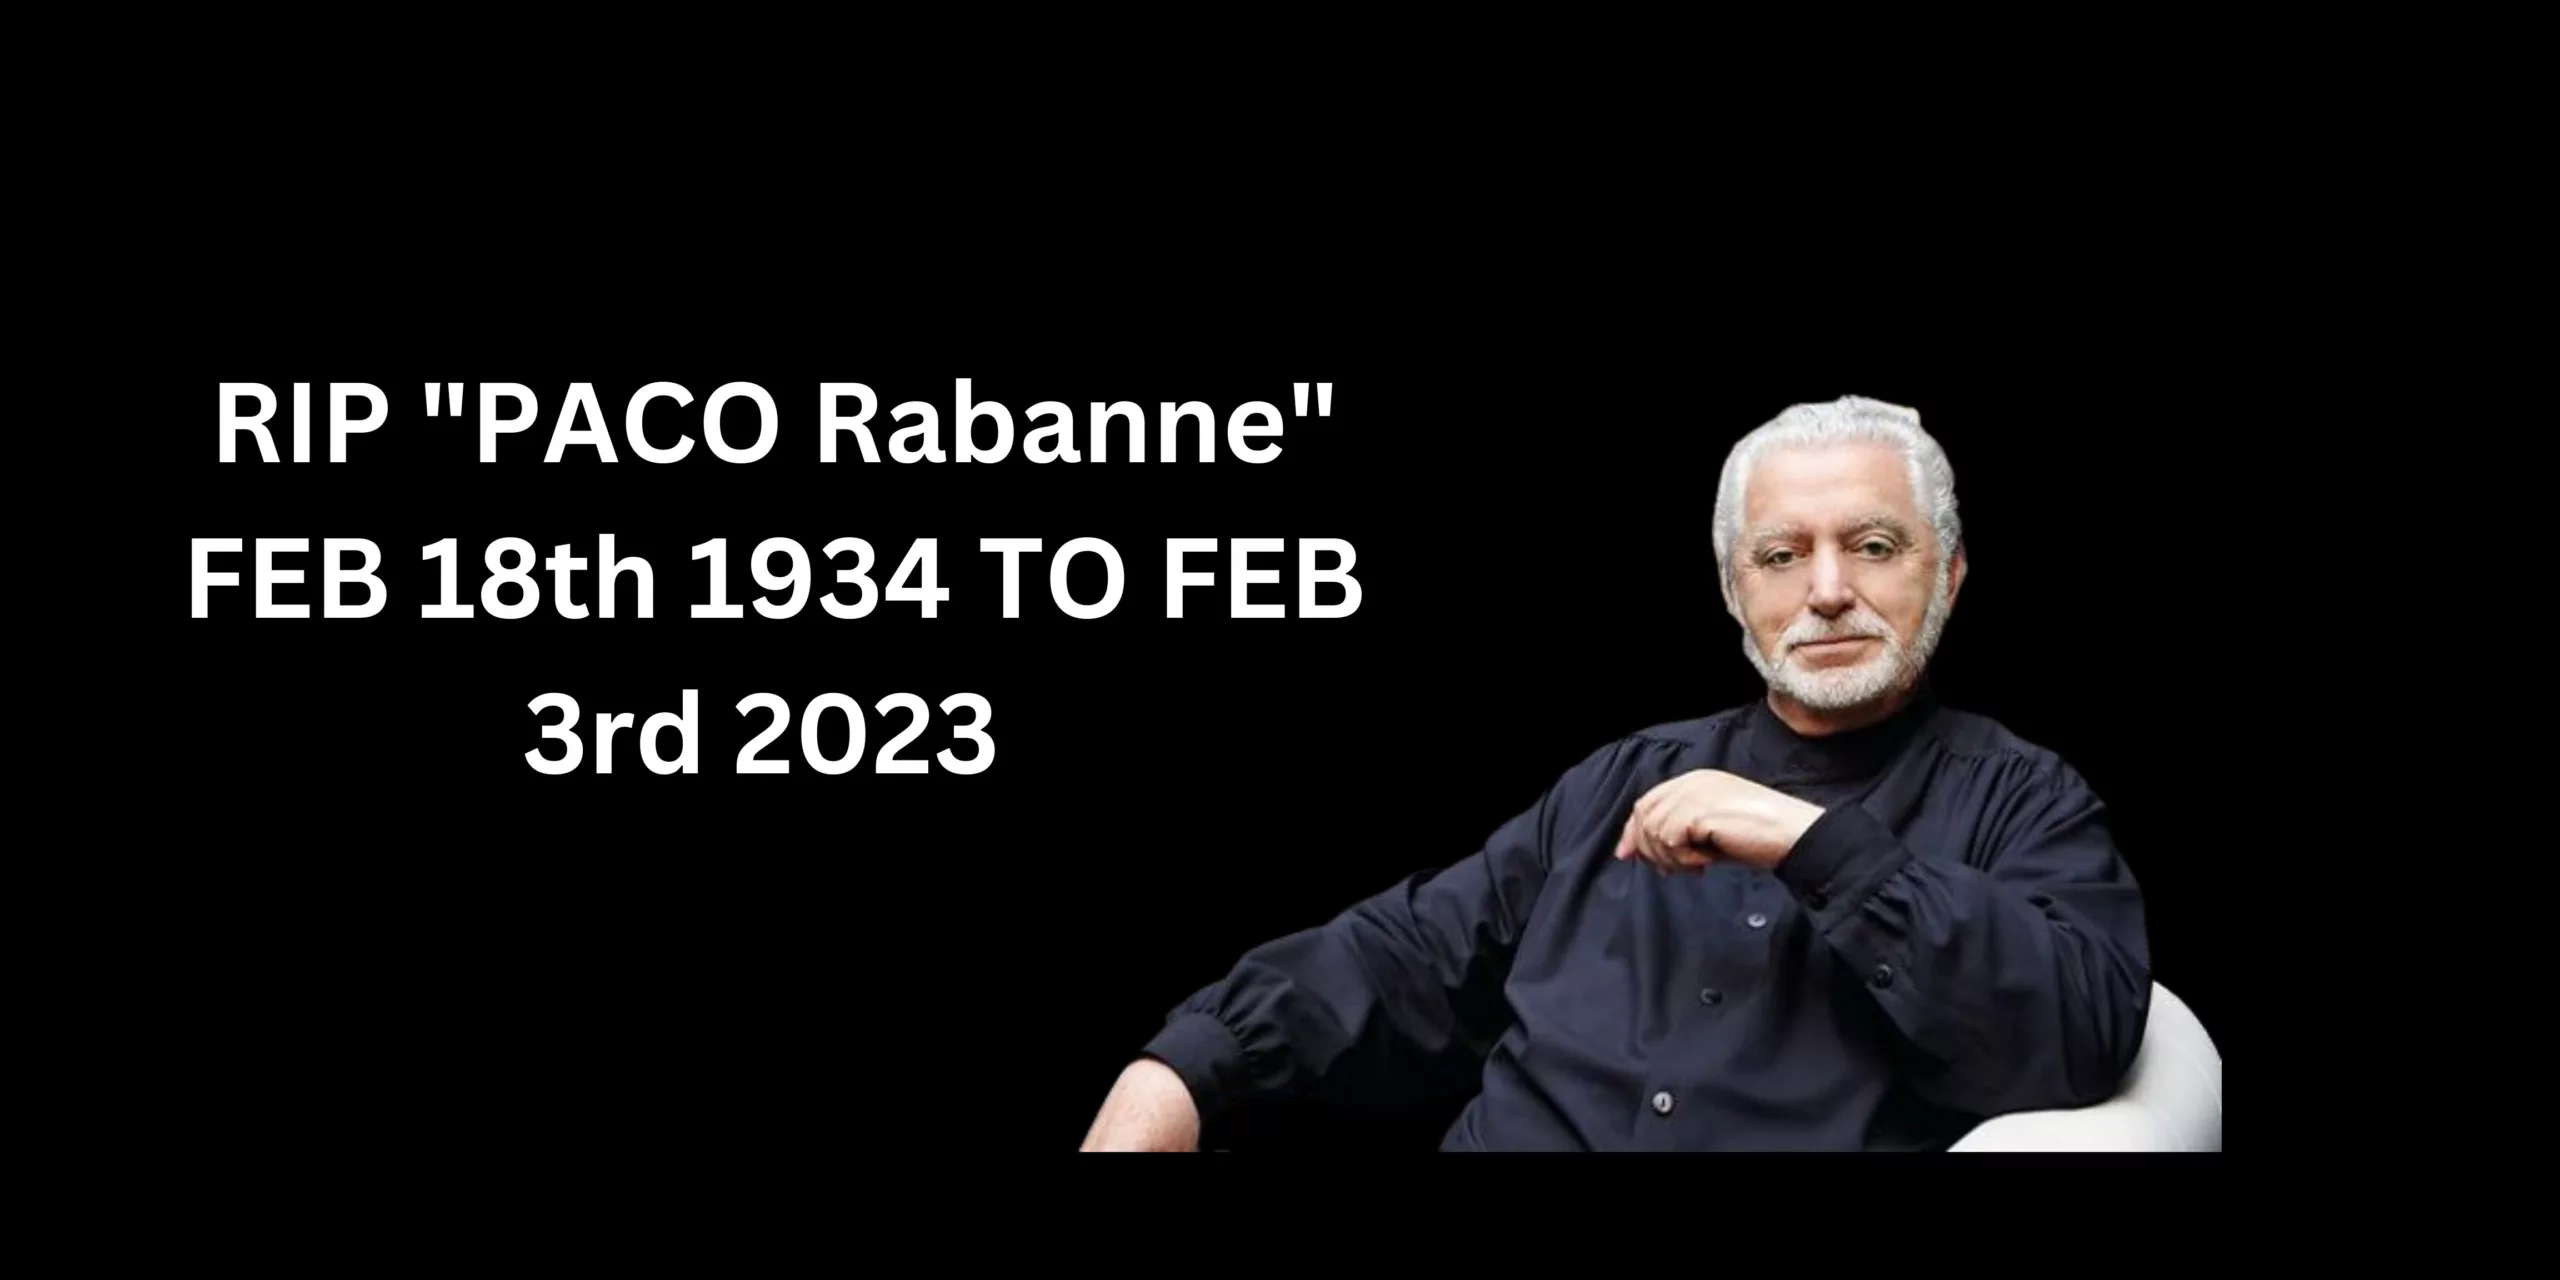 RIP "PACO Rabanne" FEB 18th 1934 TO FEB 3rd 2023